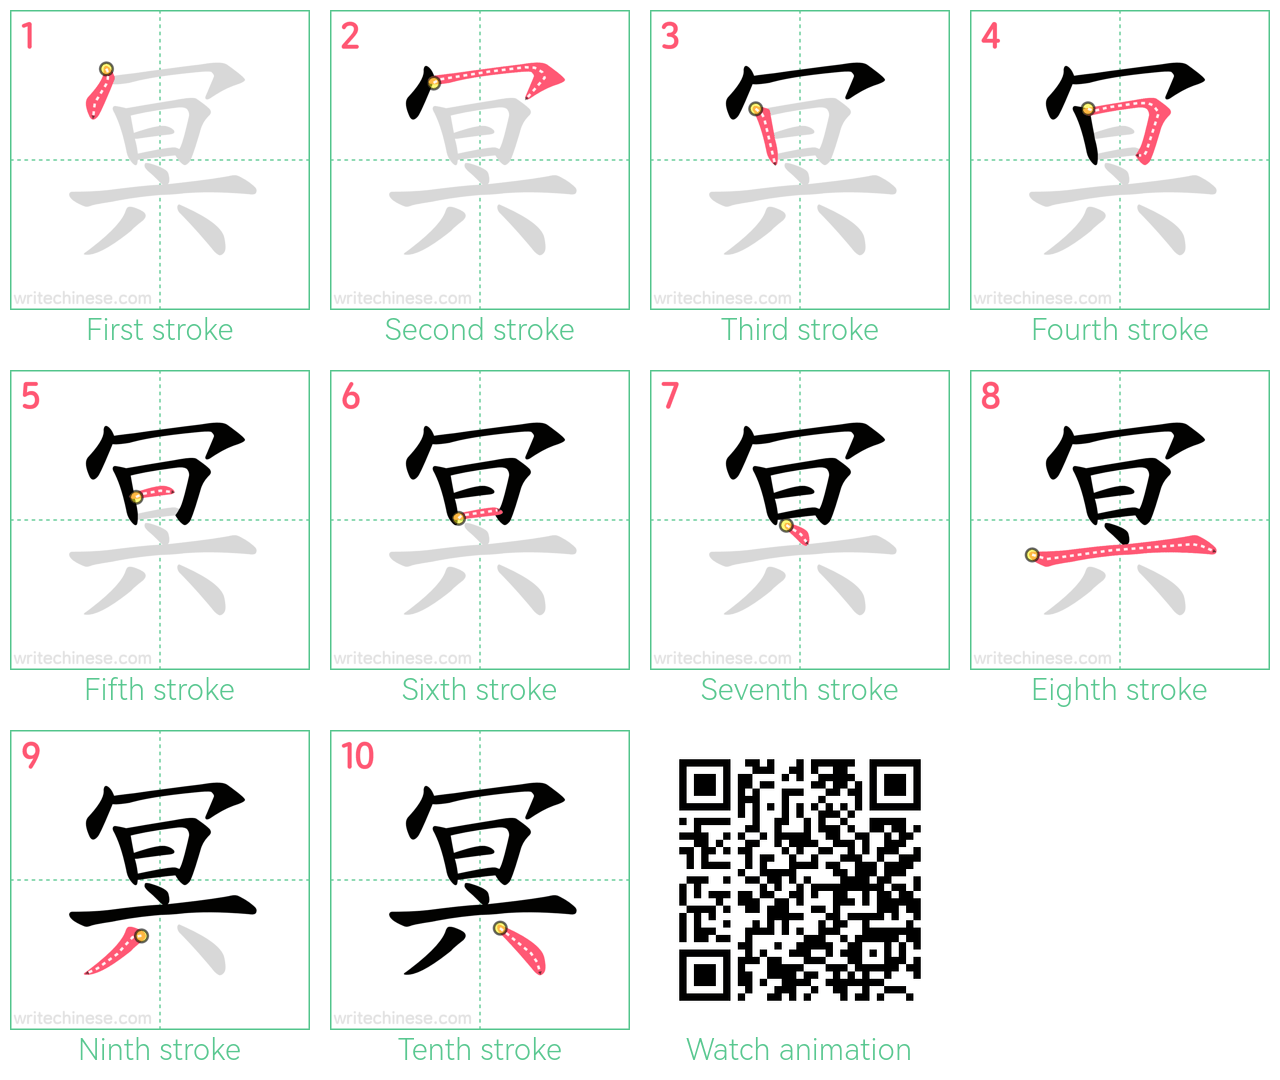 冥 step-by-step stroke order diagrams